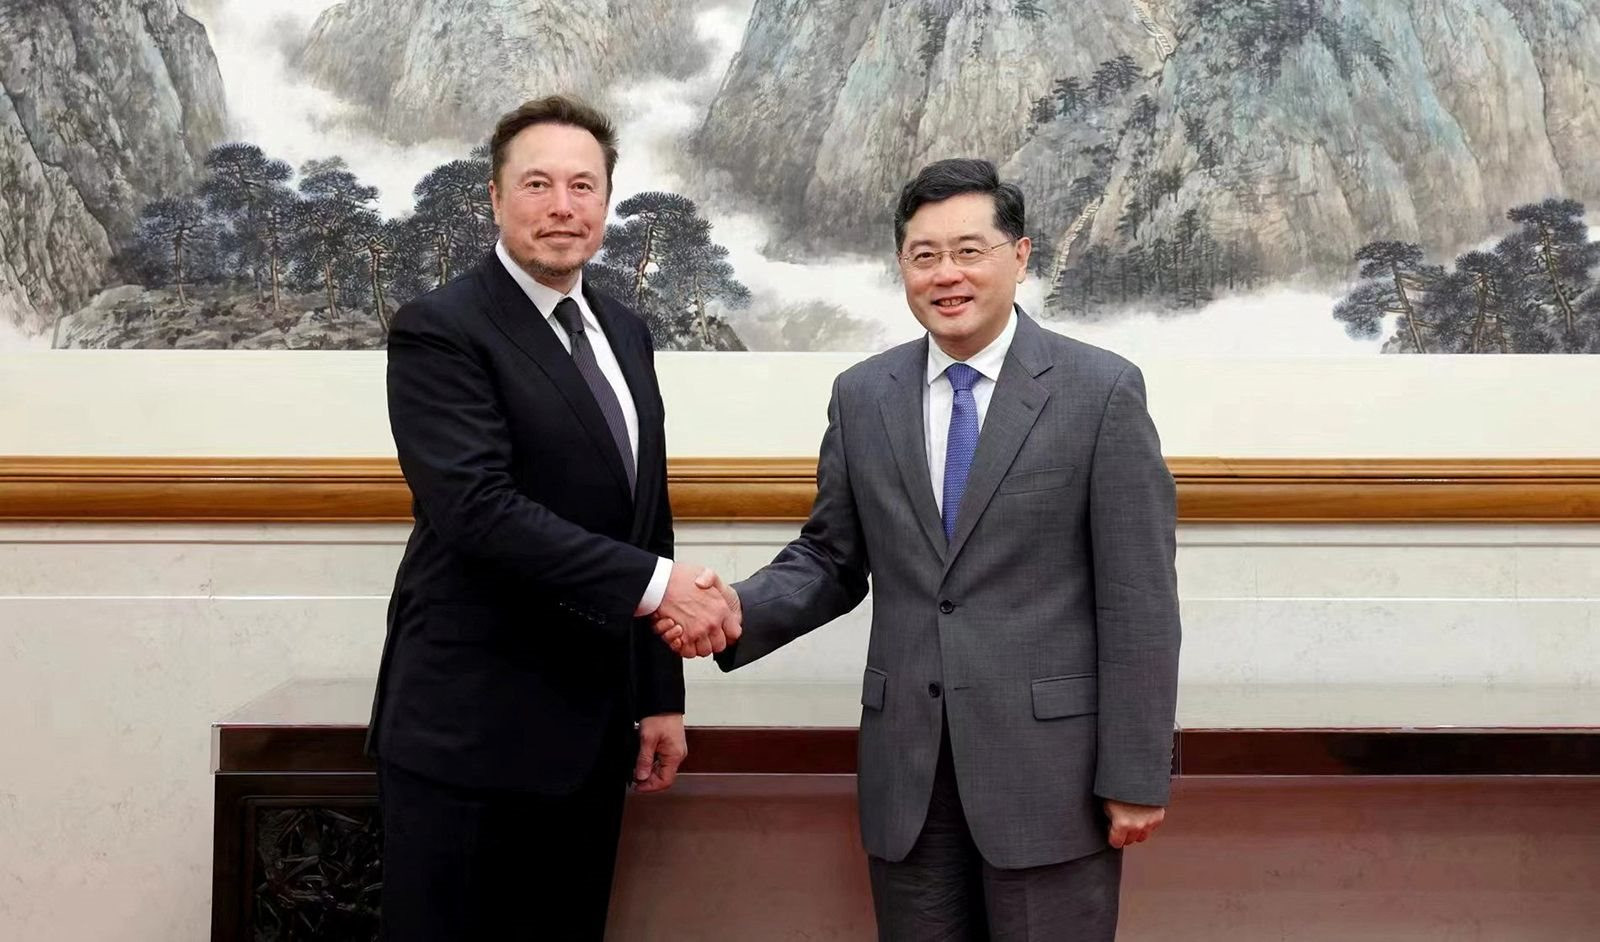 Elon Musk vừa thực hiện chuyến công tác 2 ngày ở Trung Quốc, 'rất quan trọng' với tương lai Tesla